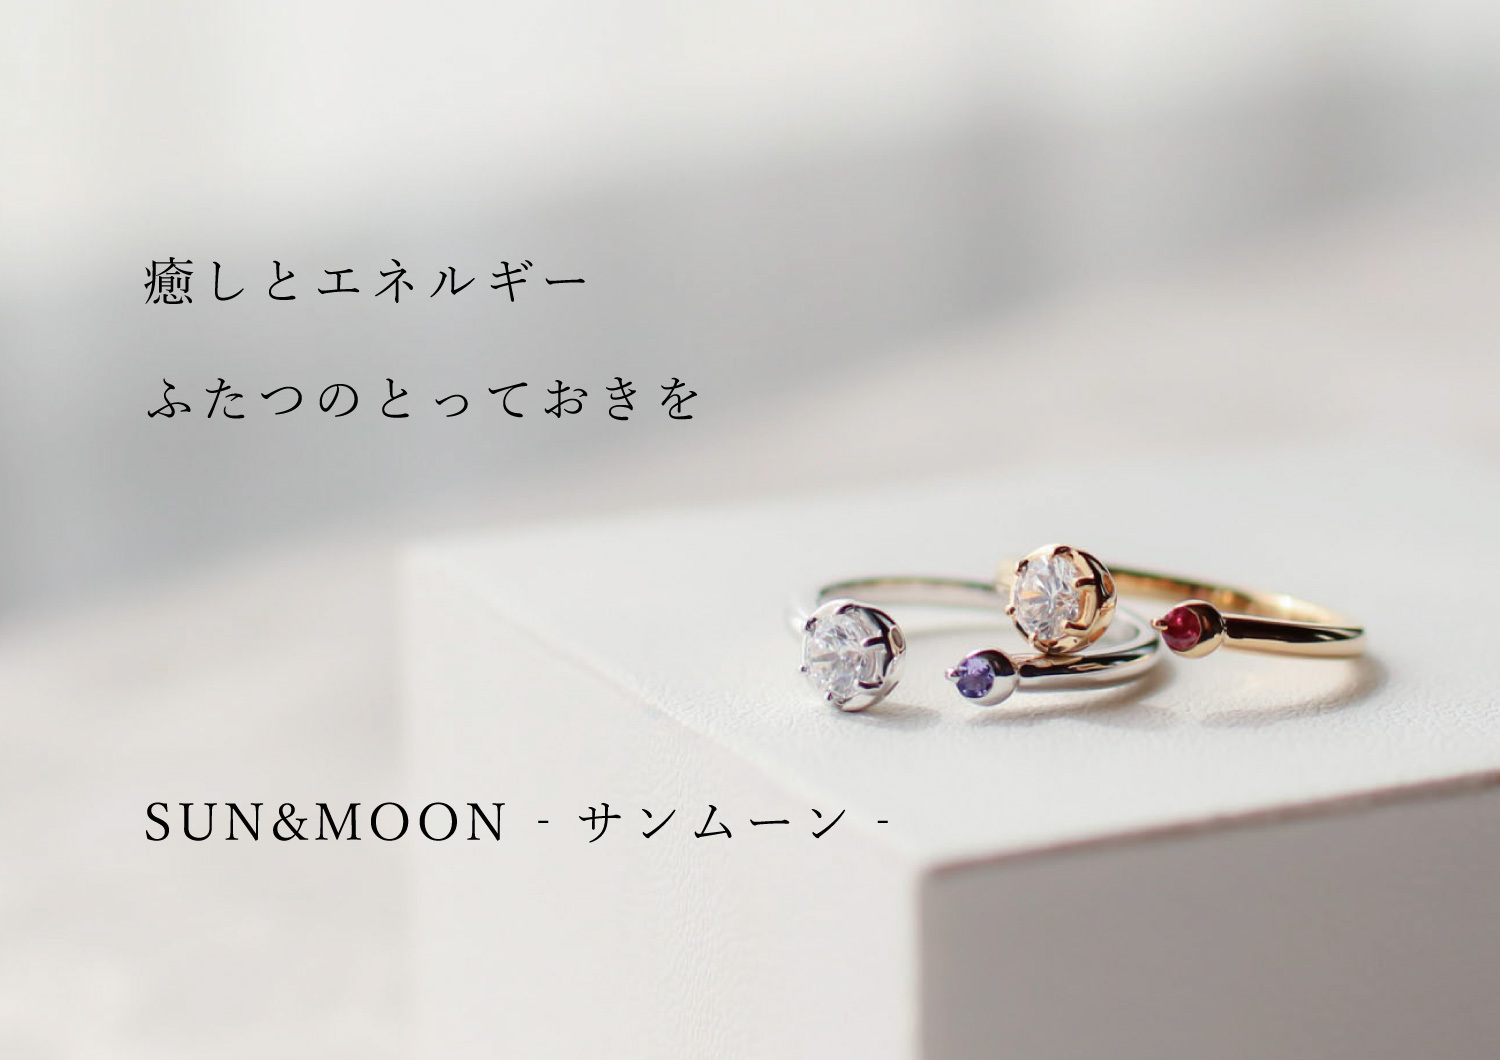 ⭐️4°C ダイヤモンドリング 10号 0.207/F/H&C/3EX⭐️婚約指輪 tivicr.com